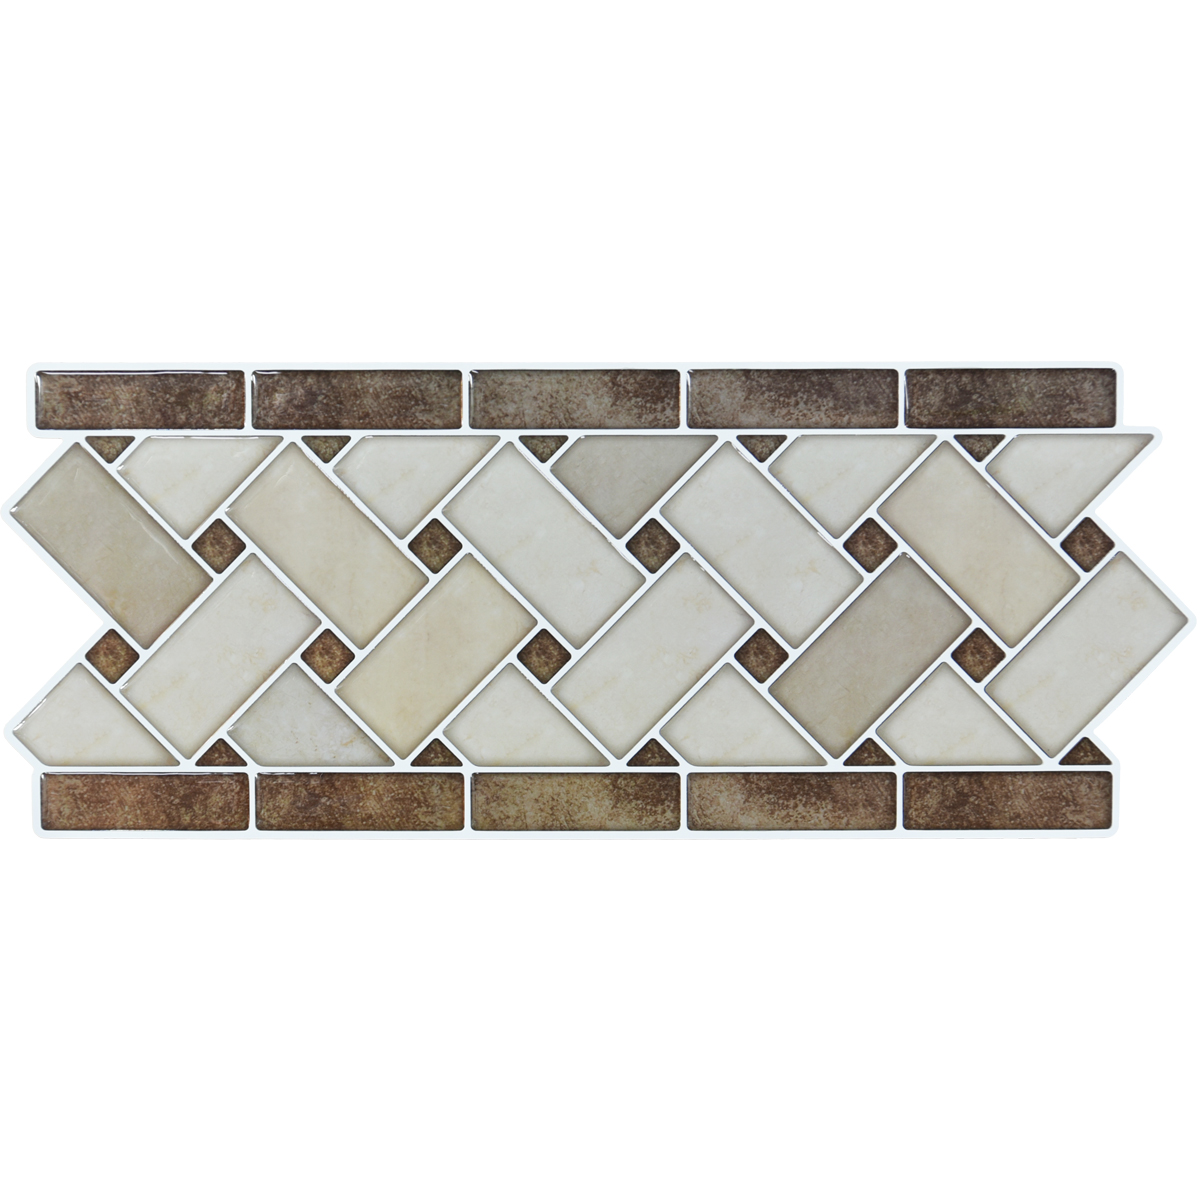 A17122 - Peel and Stick Backsplash Tile Borders, Removable Backsplash for Kitchen, Bathroom, Set of 10, 12.4